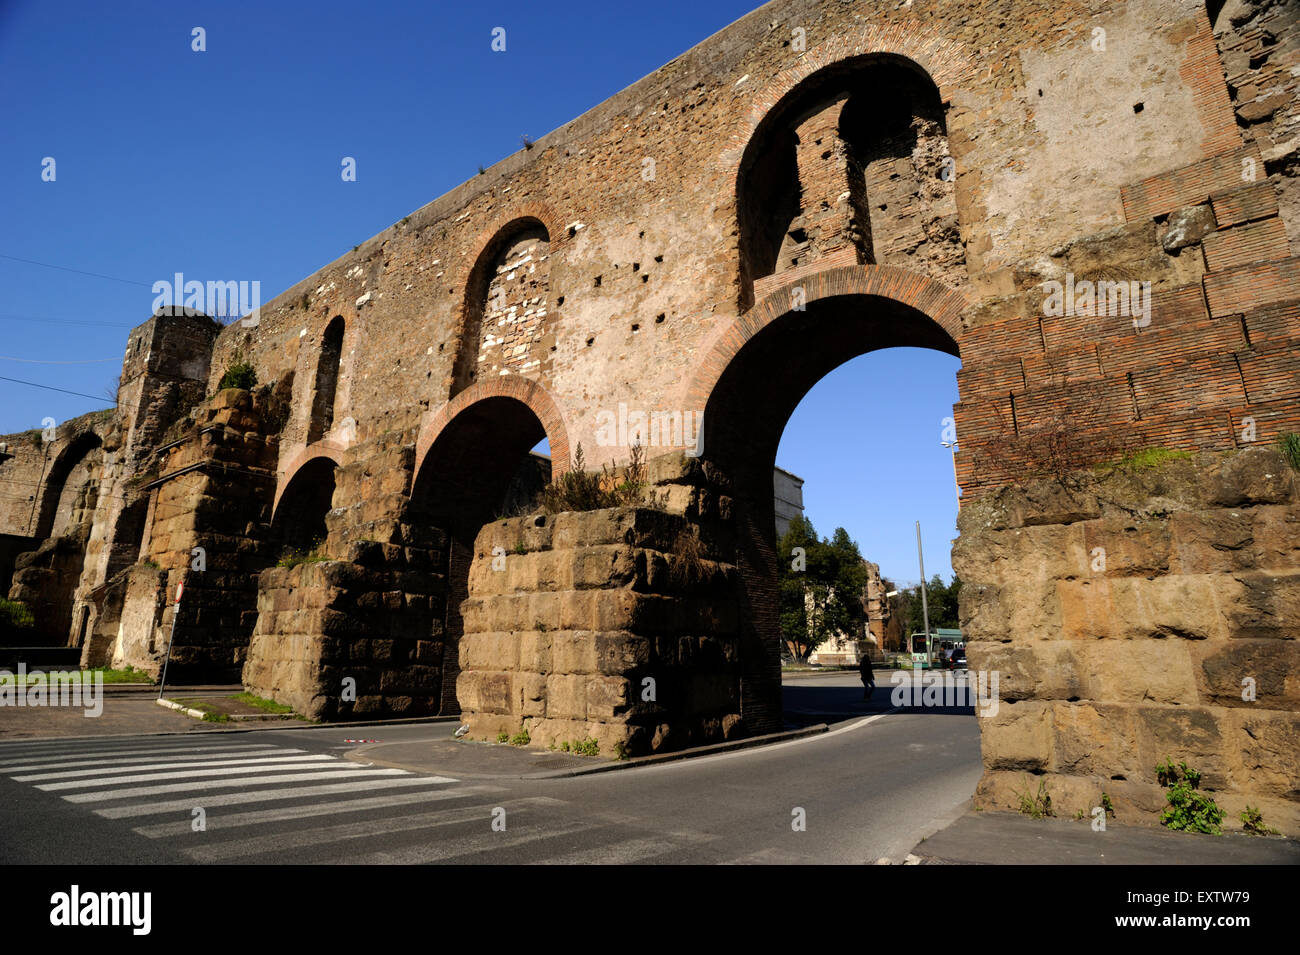 italy, rome, porta maggiore, ancient roman aqueduct Stock Photo - Alamy